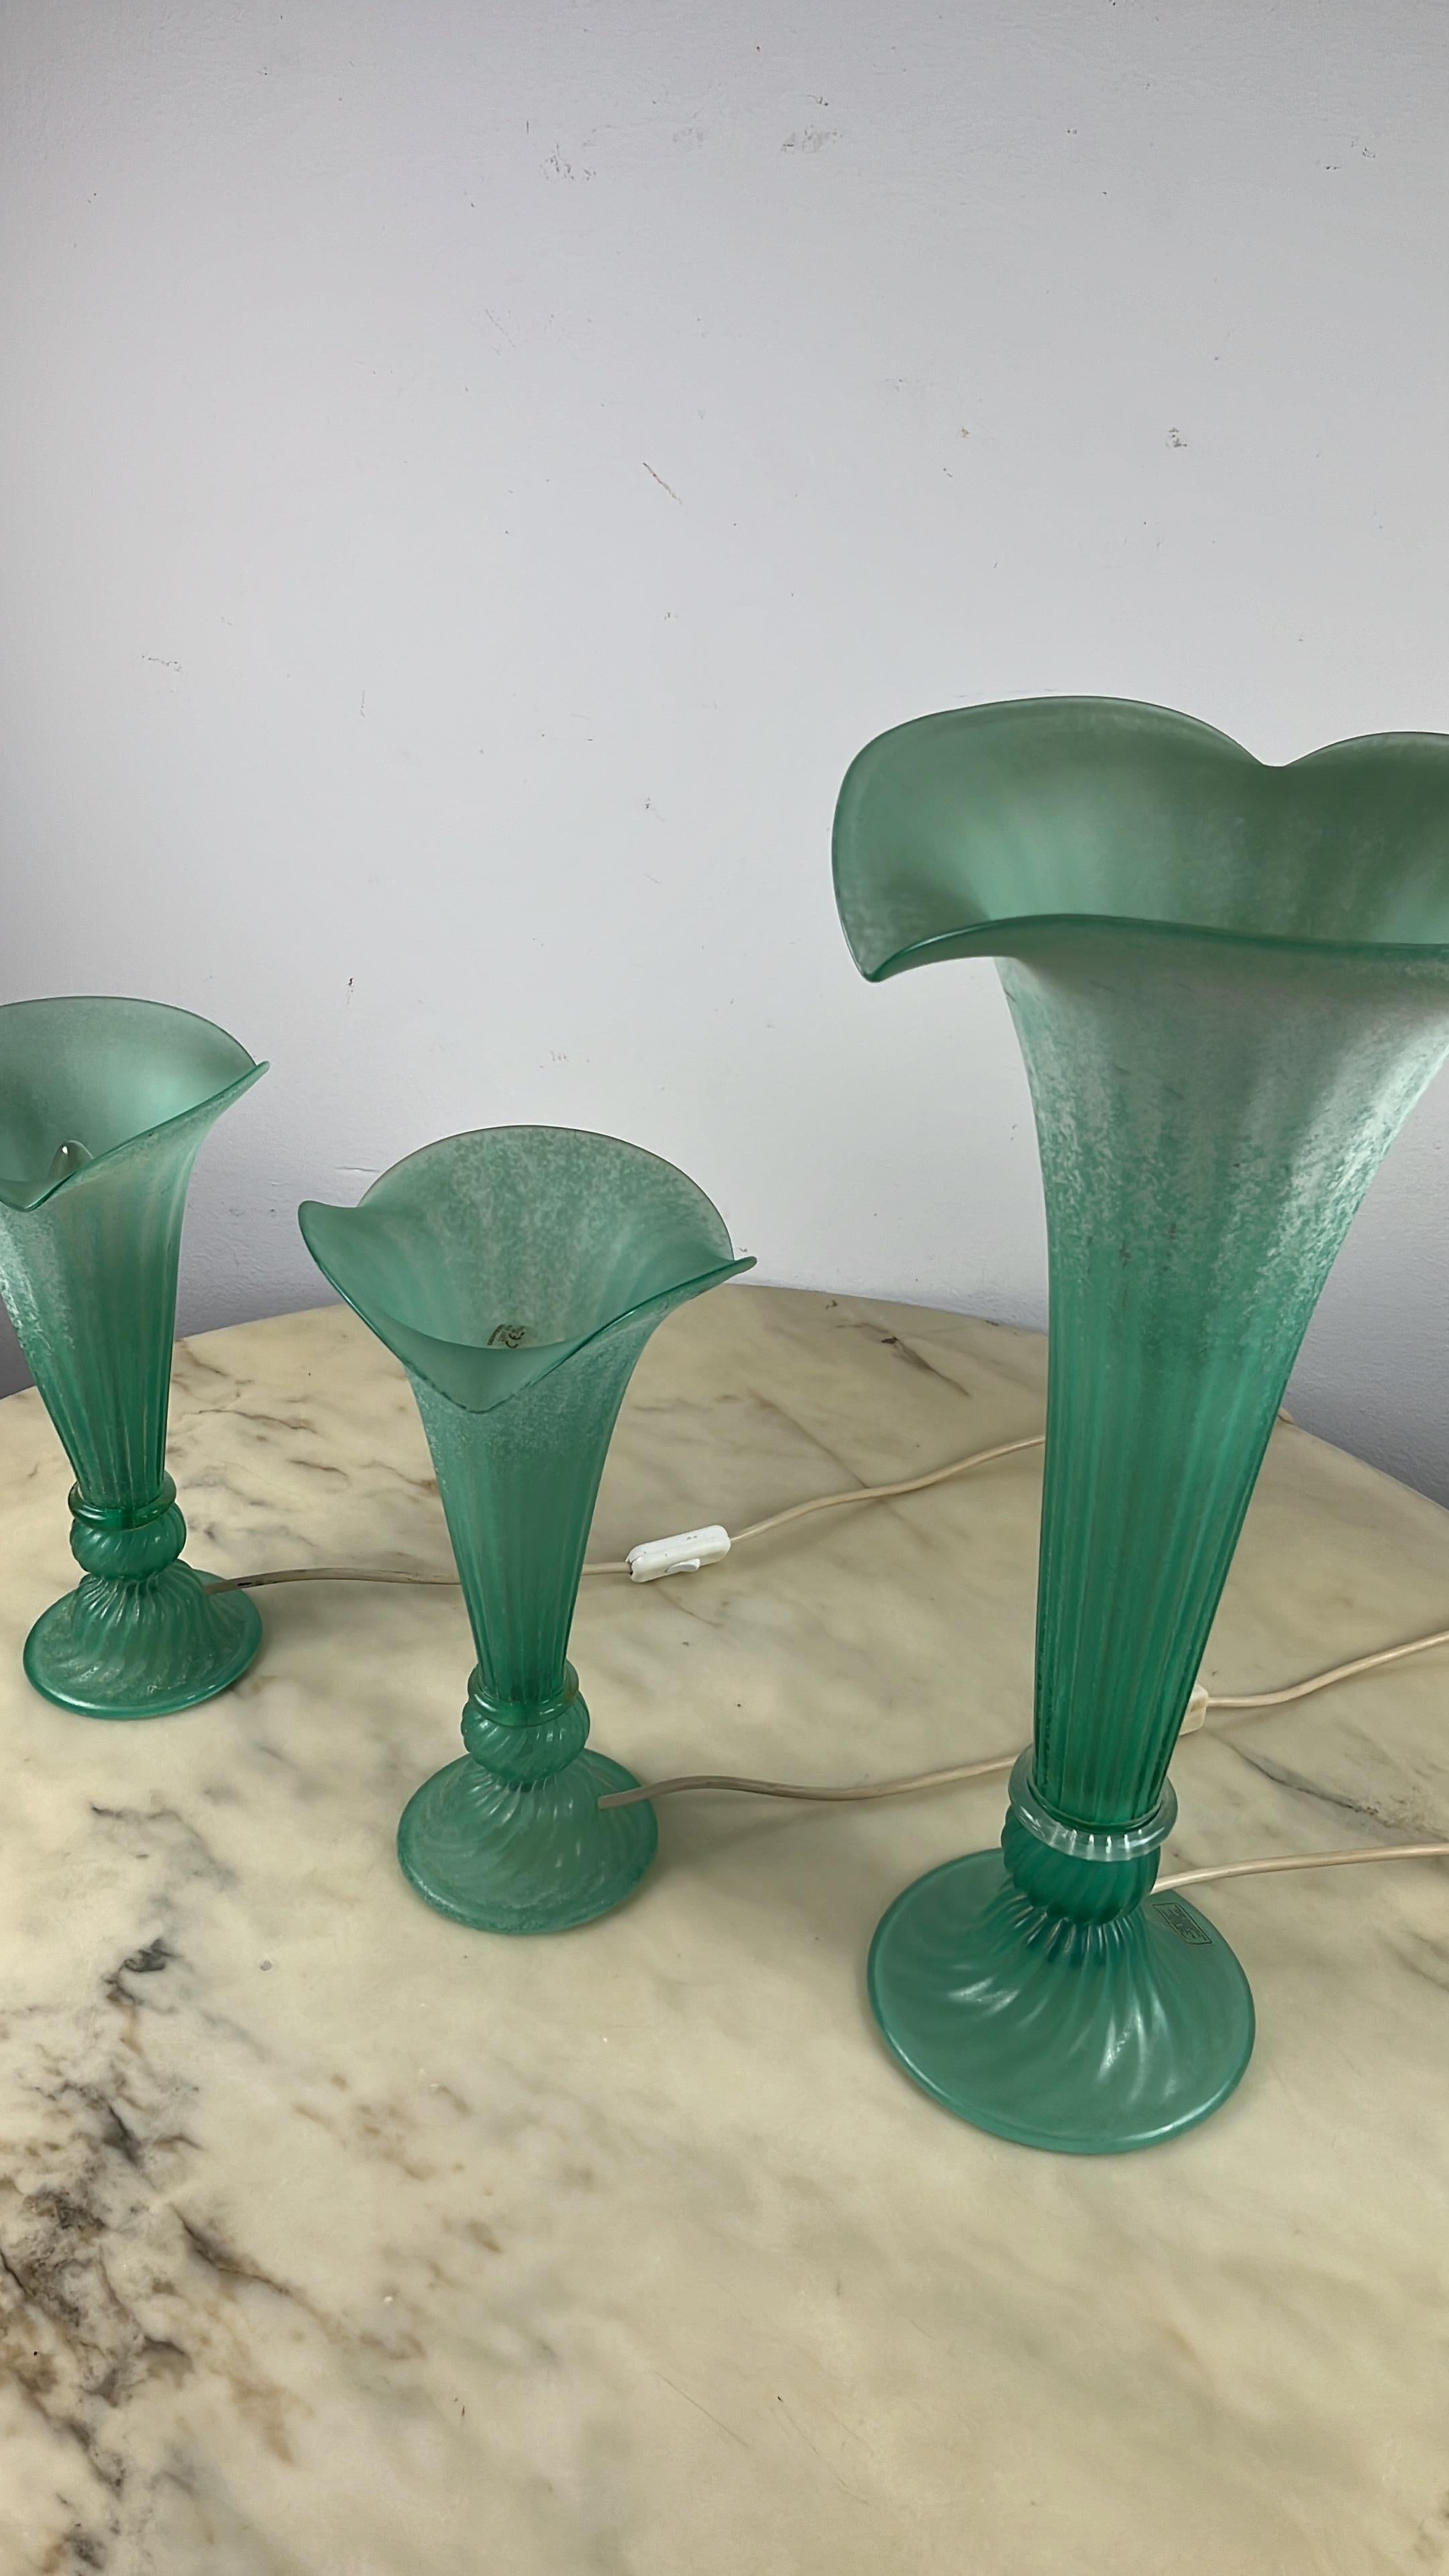 Satz von 3 grünen Murano-Glaslampen, Italien, 1980er Jahre.
Das große Exemplar ist 53 cm hoch und misst an der breitesten Stelle 27 cm. Die beiden kleineren sind 33 cm hoch und messen an der breitesten Stelle 18,5 cm.
Sie sind wie Blumen geformt.